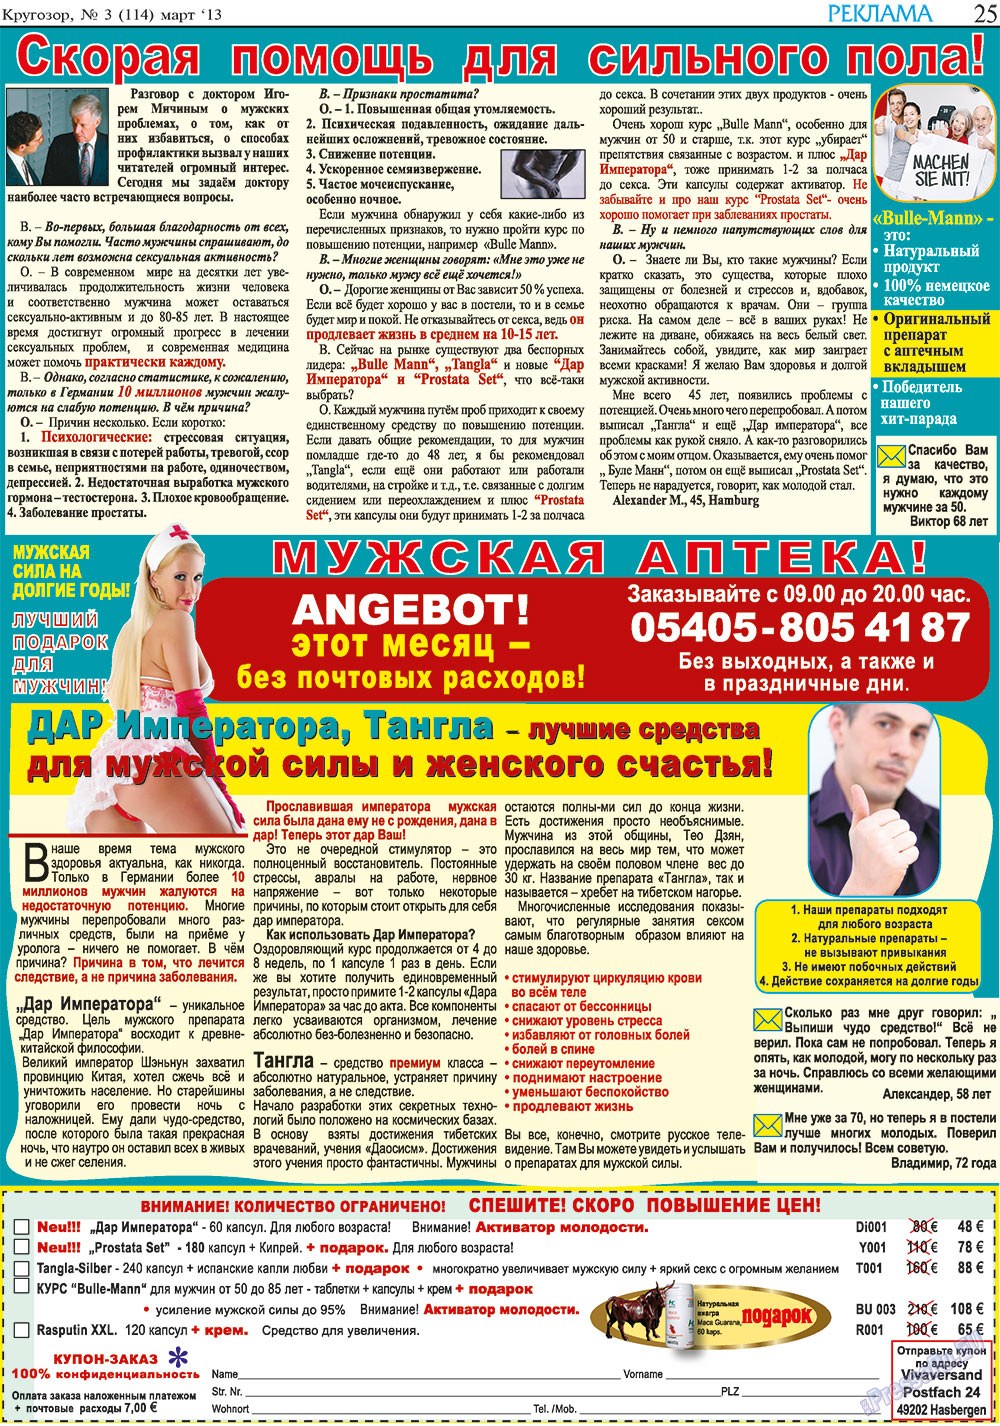 Кругозор, газета. 2013 №3 стр.25